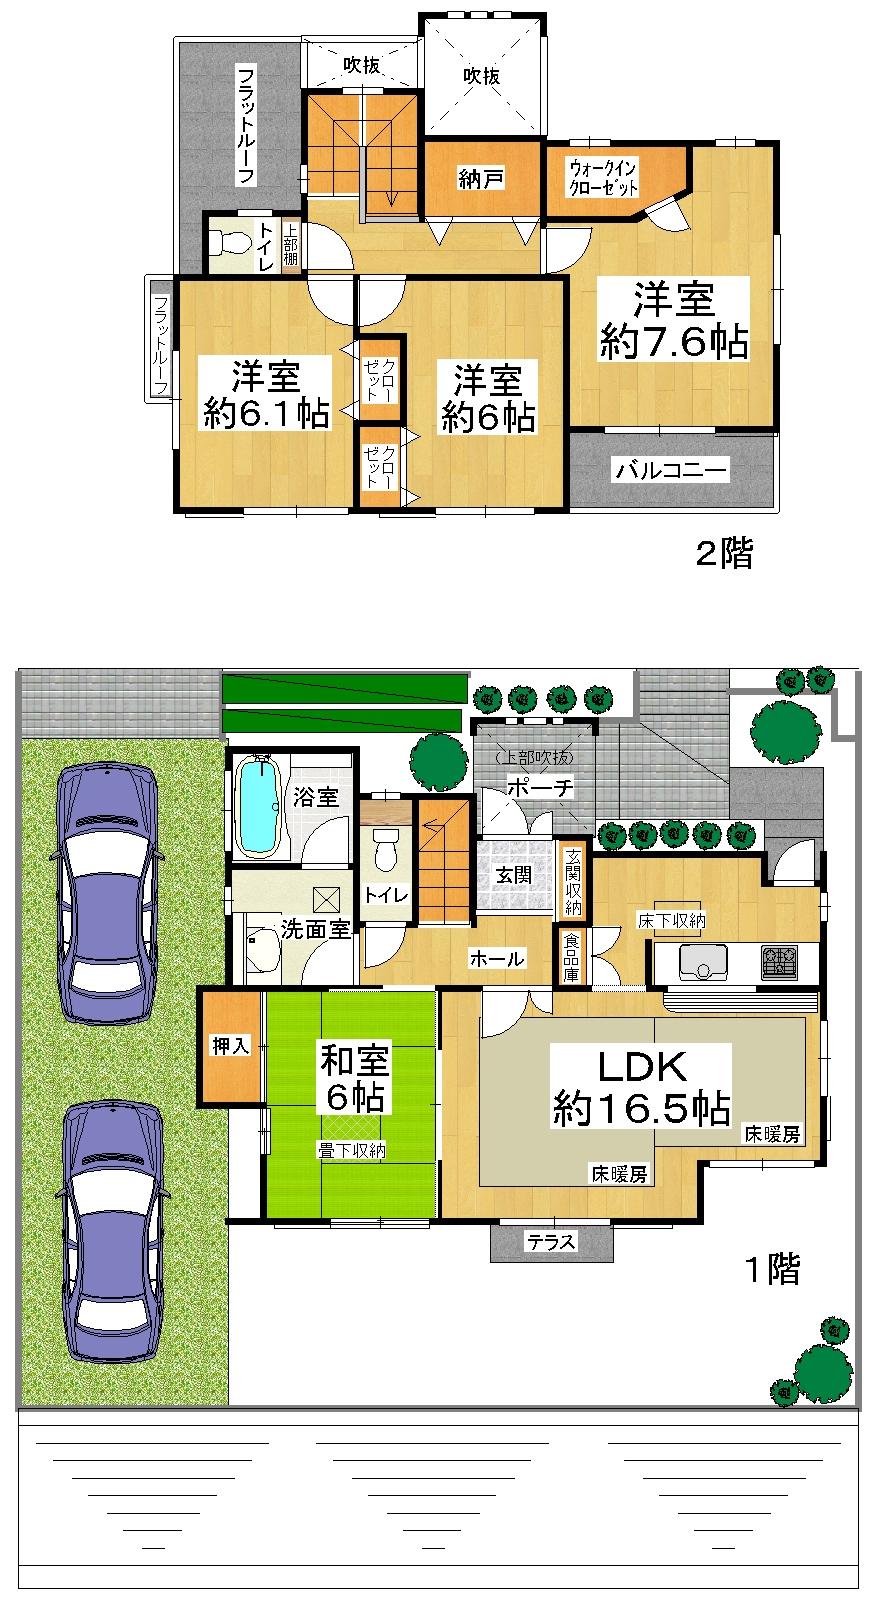 Floor plan. 21,800,000 yen, 4LDK + S (storeroom), Land area 194.99 sq m , Building area 101.66 sq m